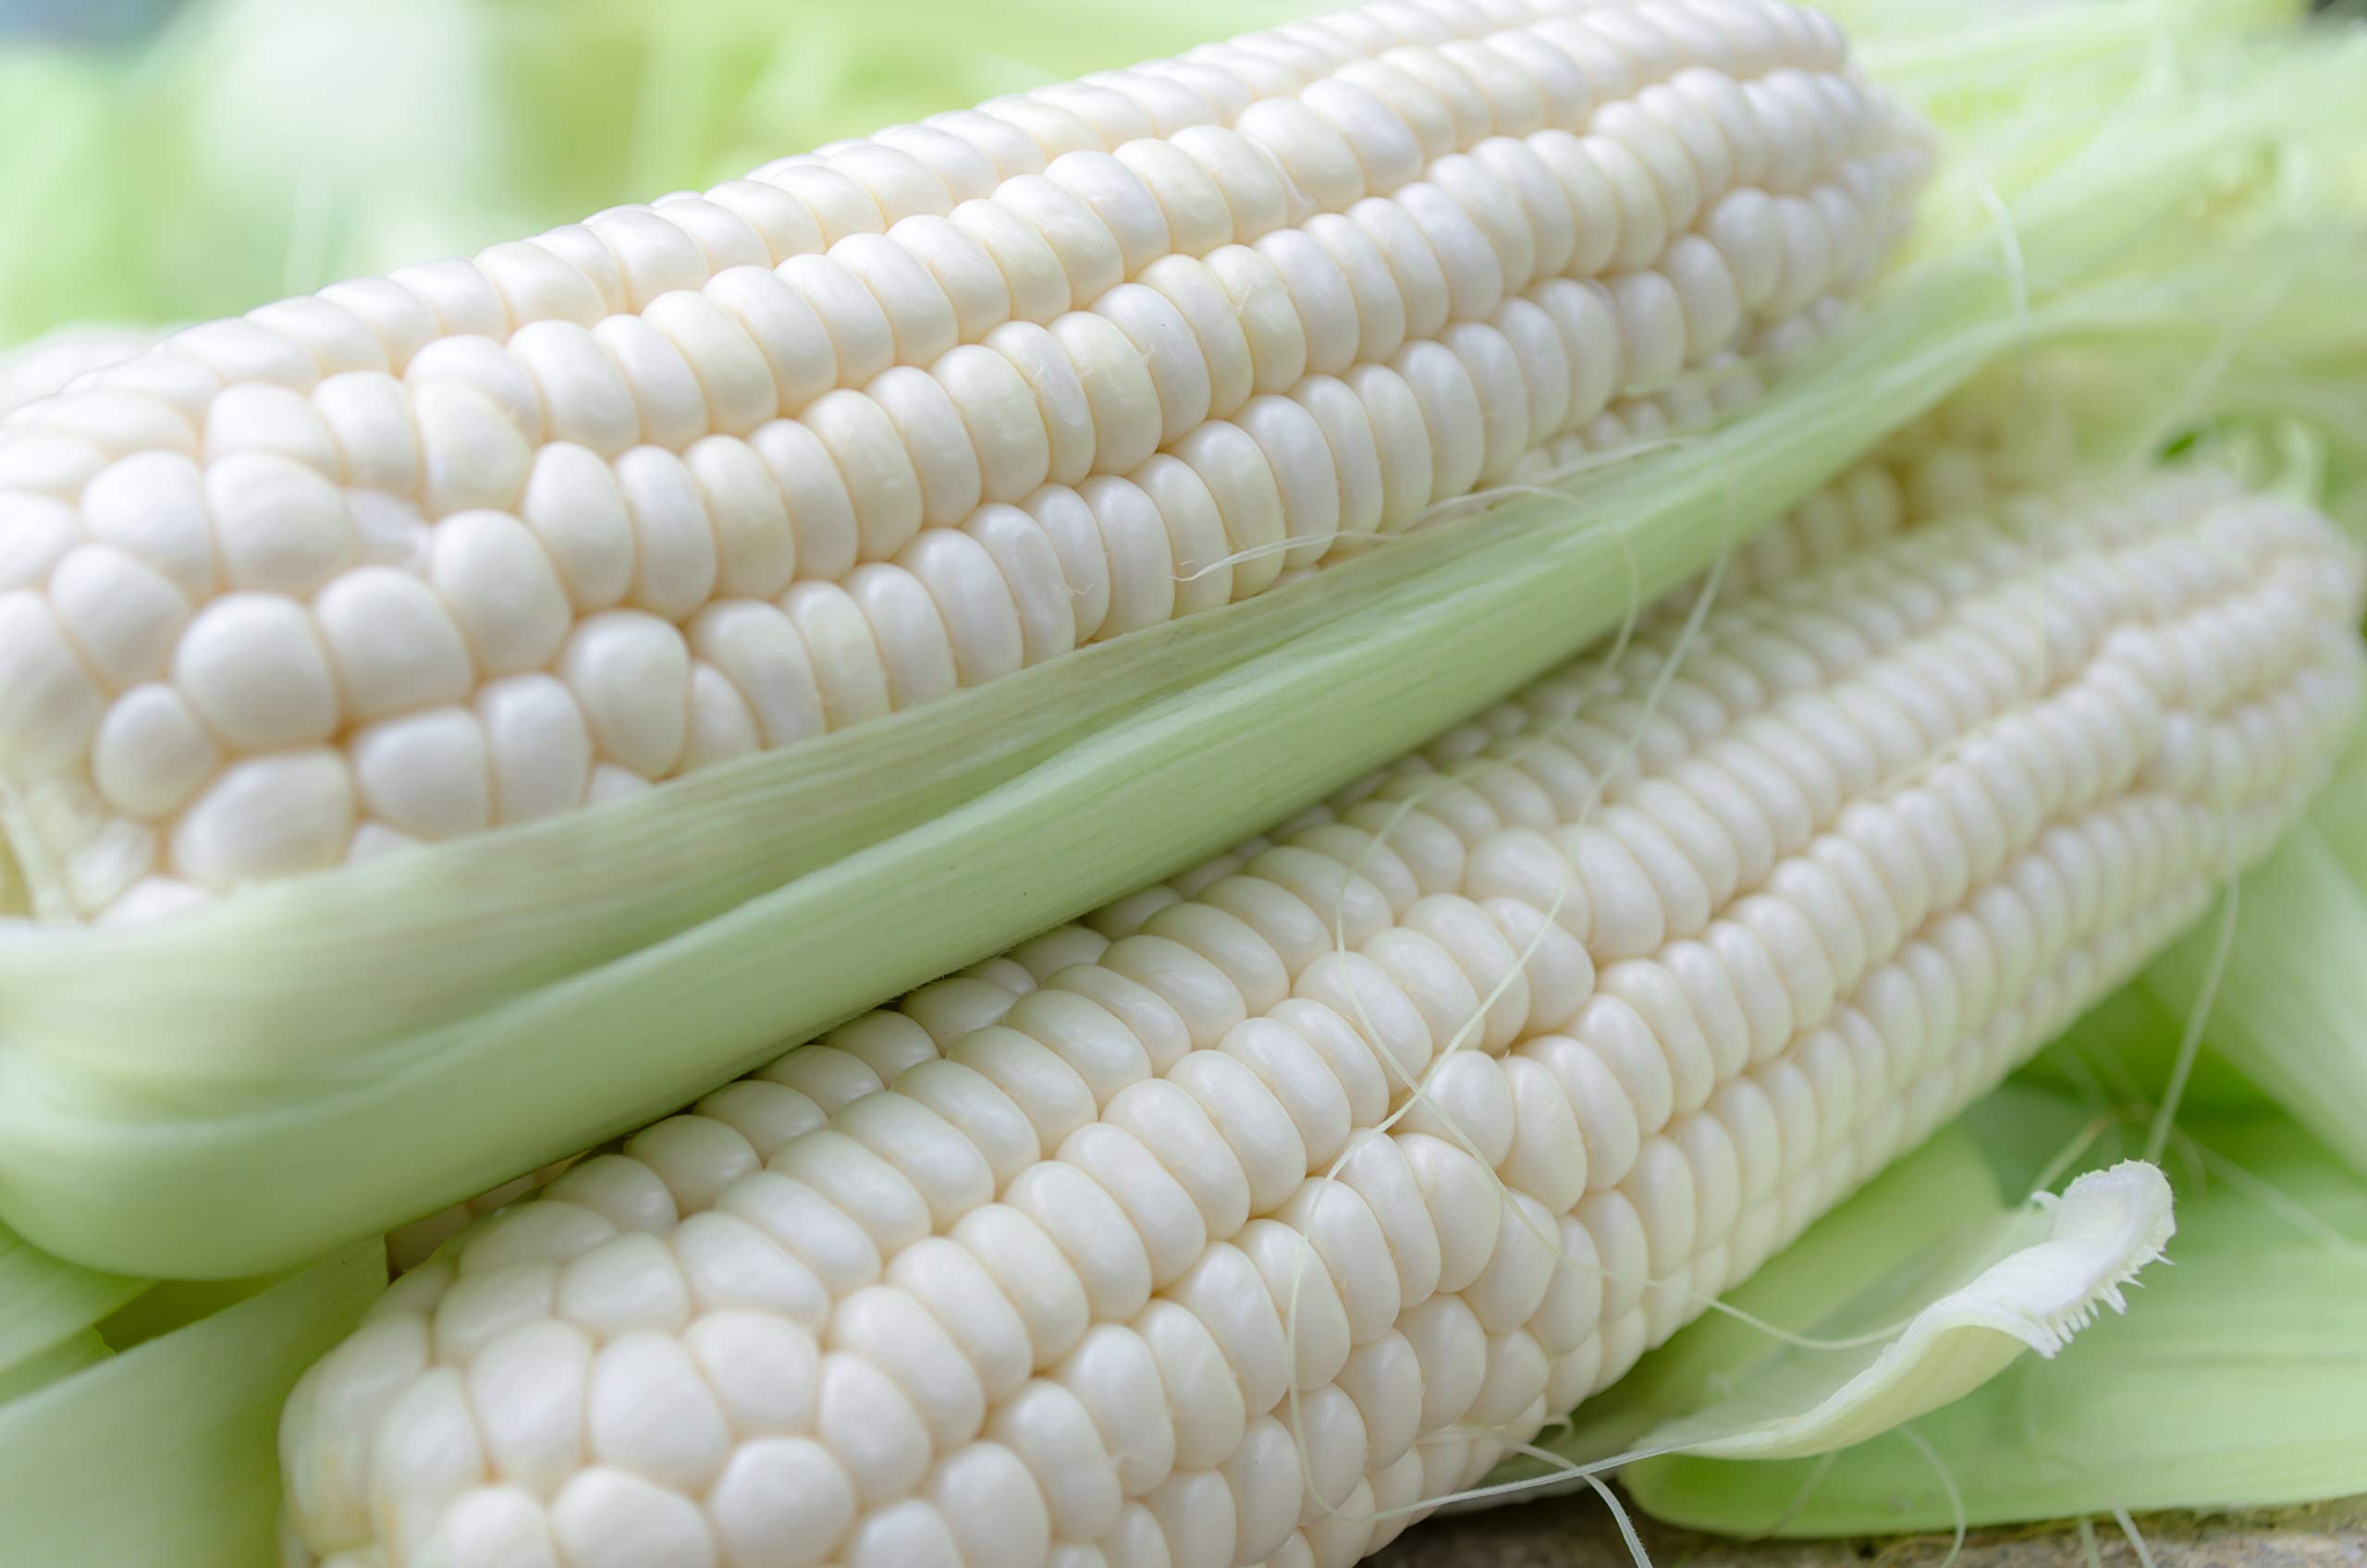 México impone arancel a la importación de maíz blanco, en medio de consultas con EU y Canadá.